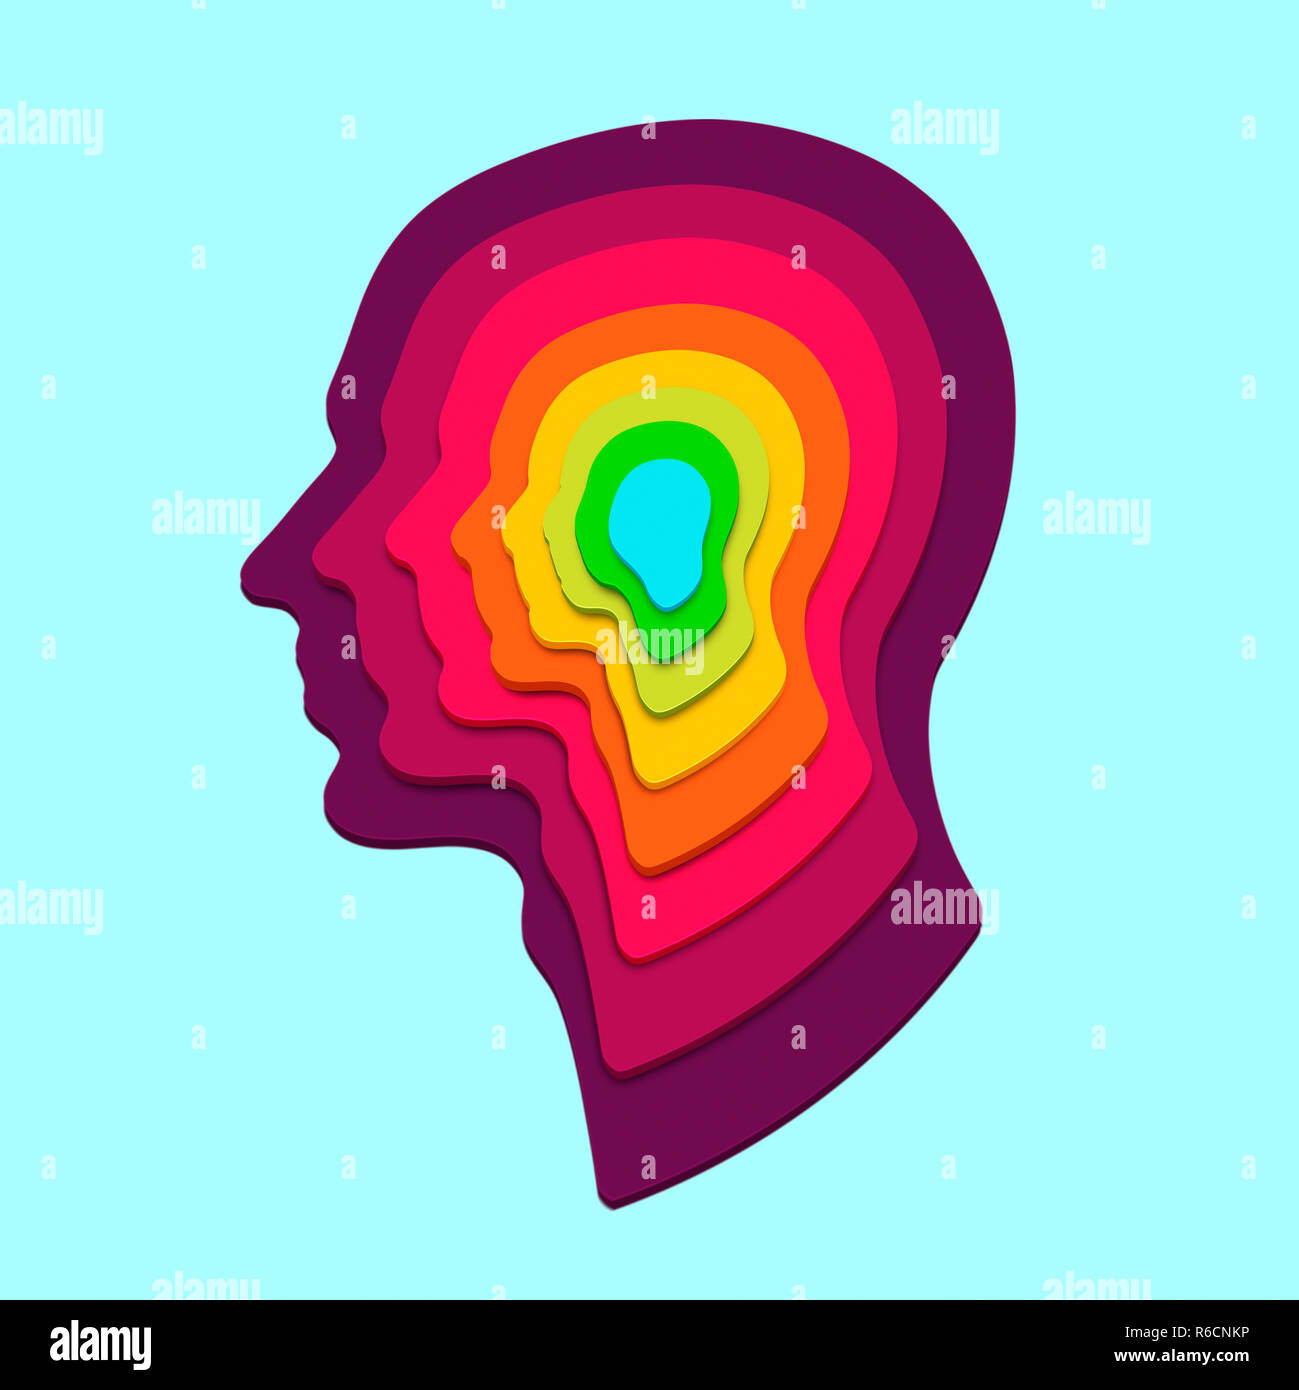 Concentriche profilo umano forme in arcobaleno di colori su un fondo azzurro Foto Stock